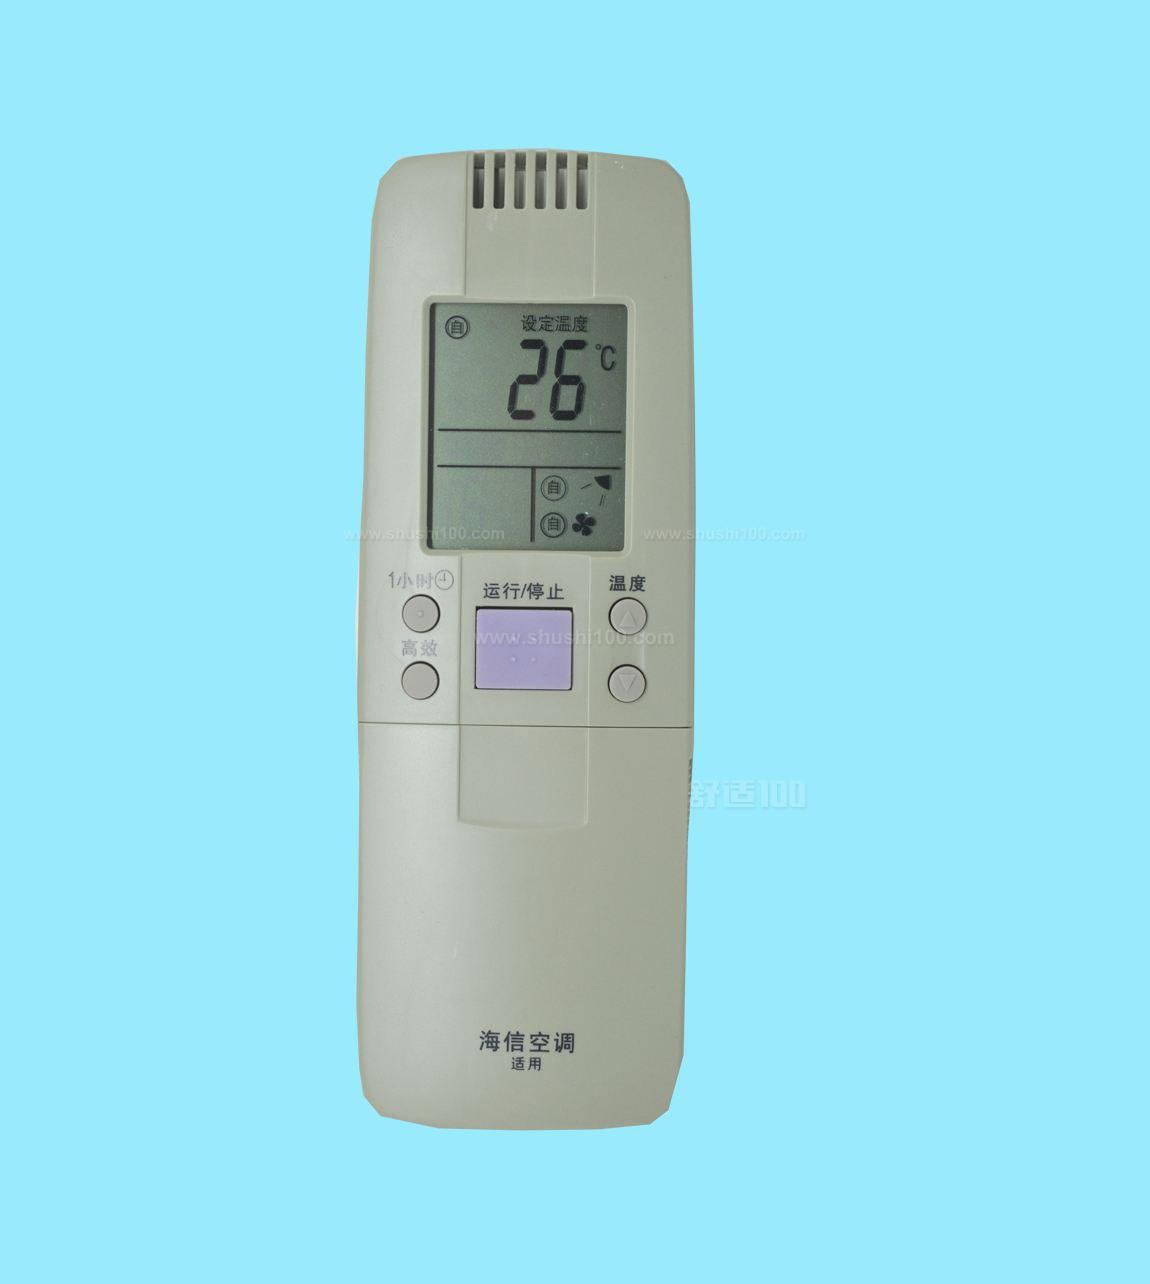 海信空调遥控器价格-海信空调遥控器价位